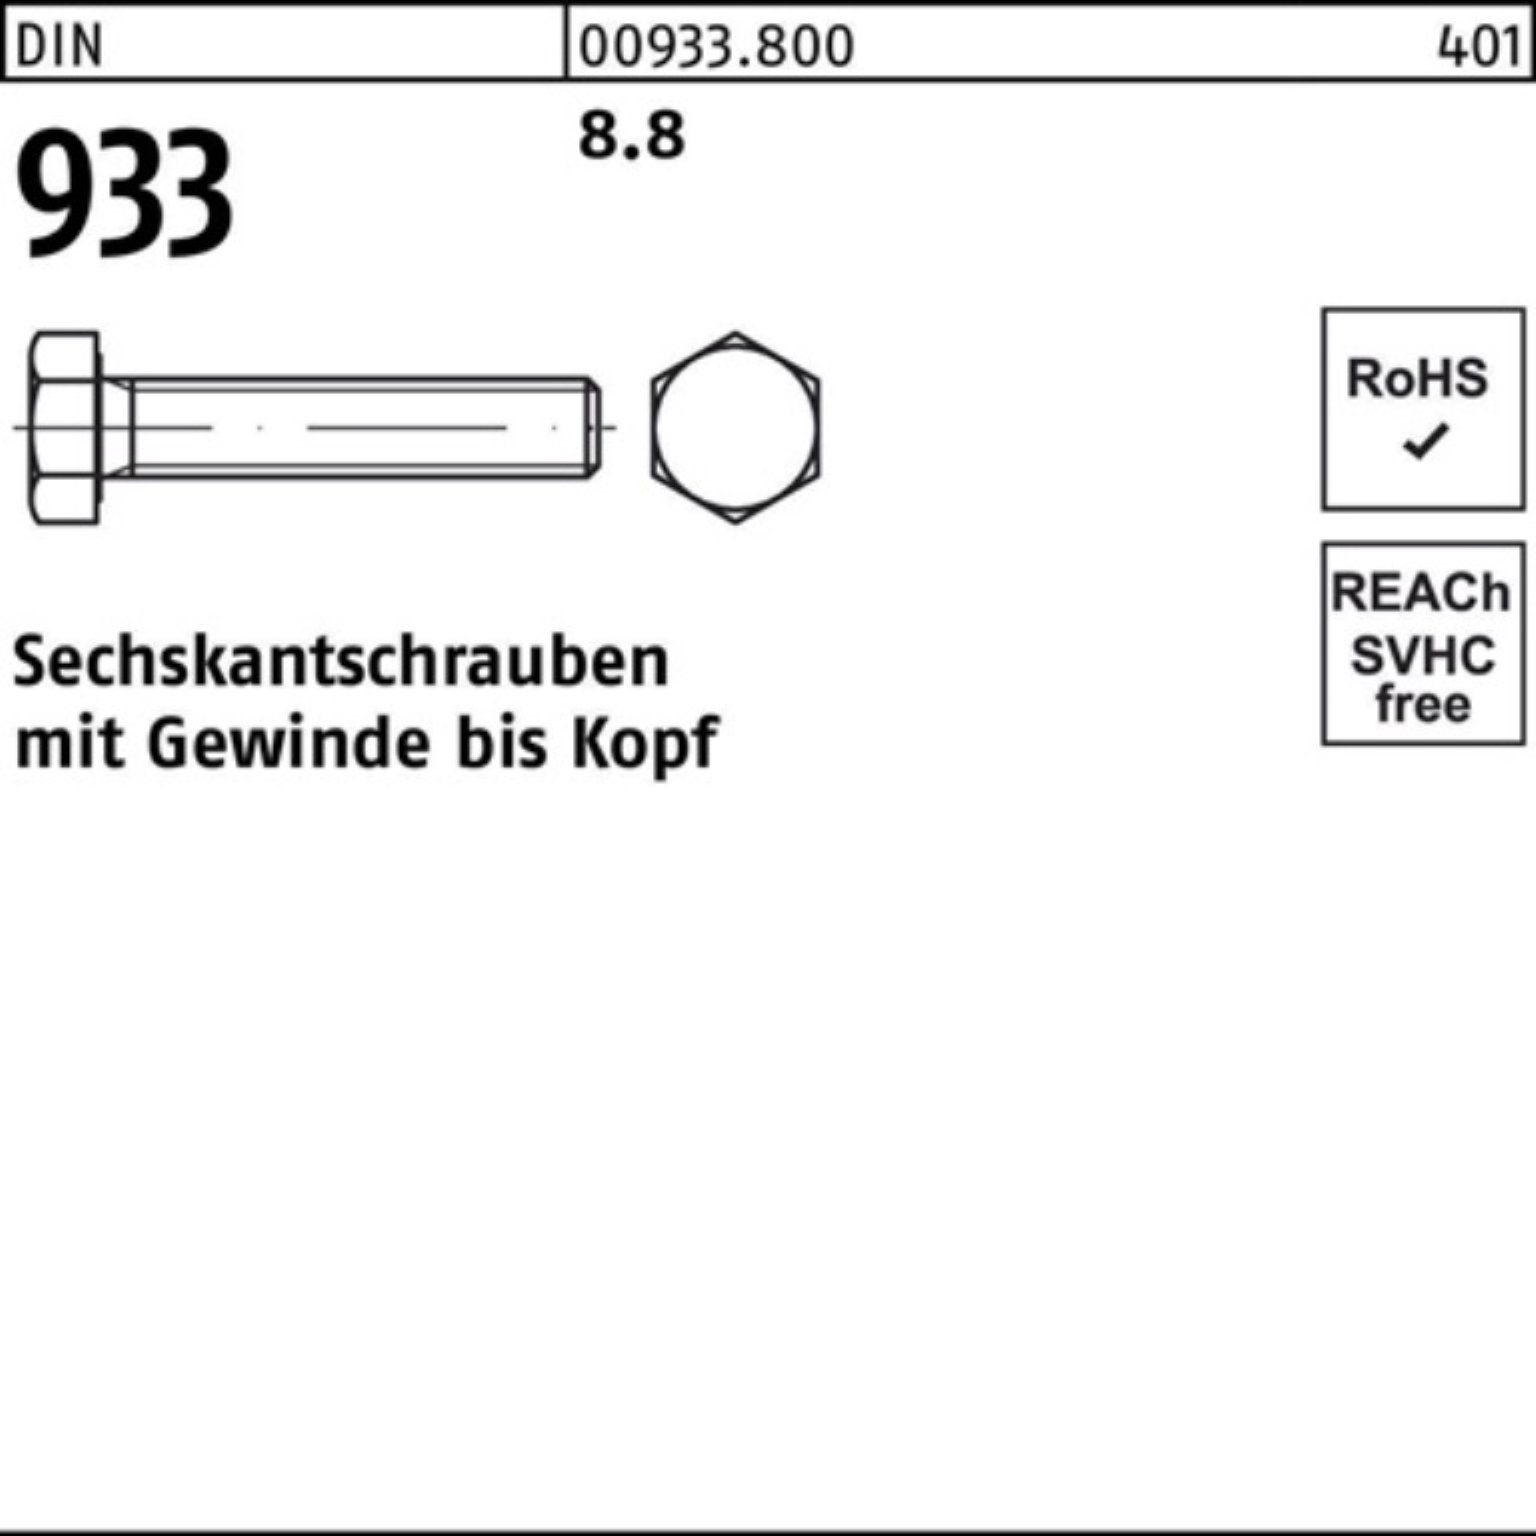 Sechskantschraube M5x 200er 933 933 DIN Pack 8.8 DIN VG 100 200 Stück Reyher Sechskantschraube